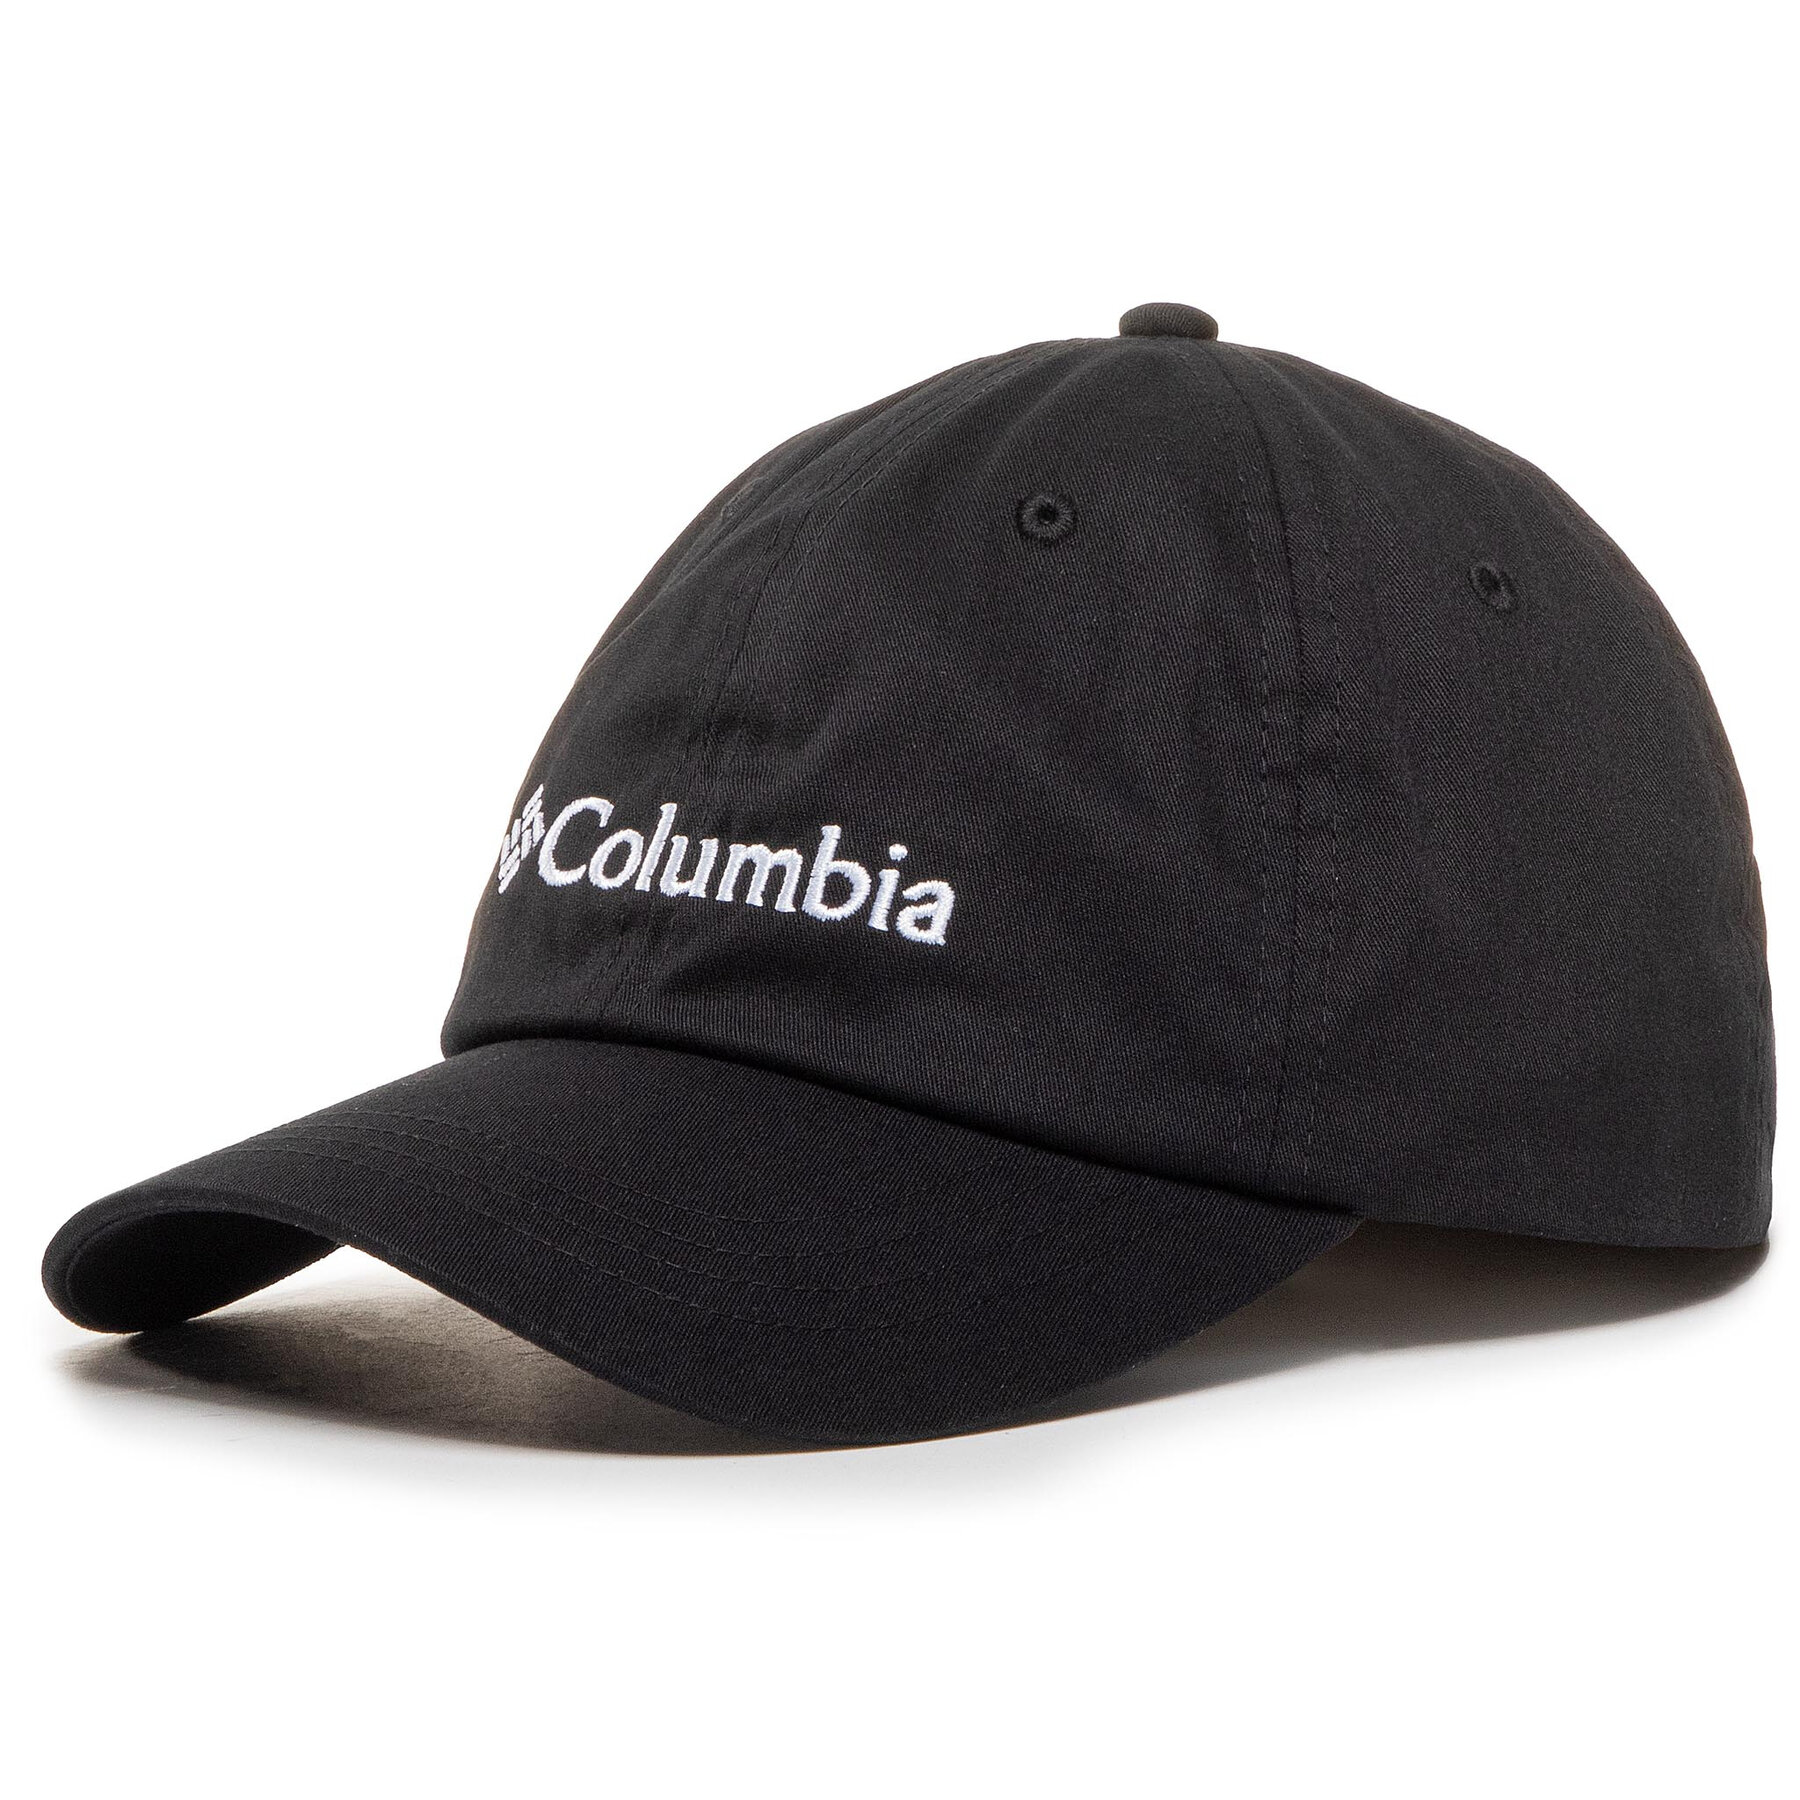 Cap Columbia Roc II Hat CU0019 Black/White 013 von Columbia